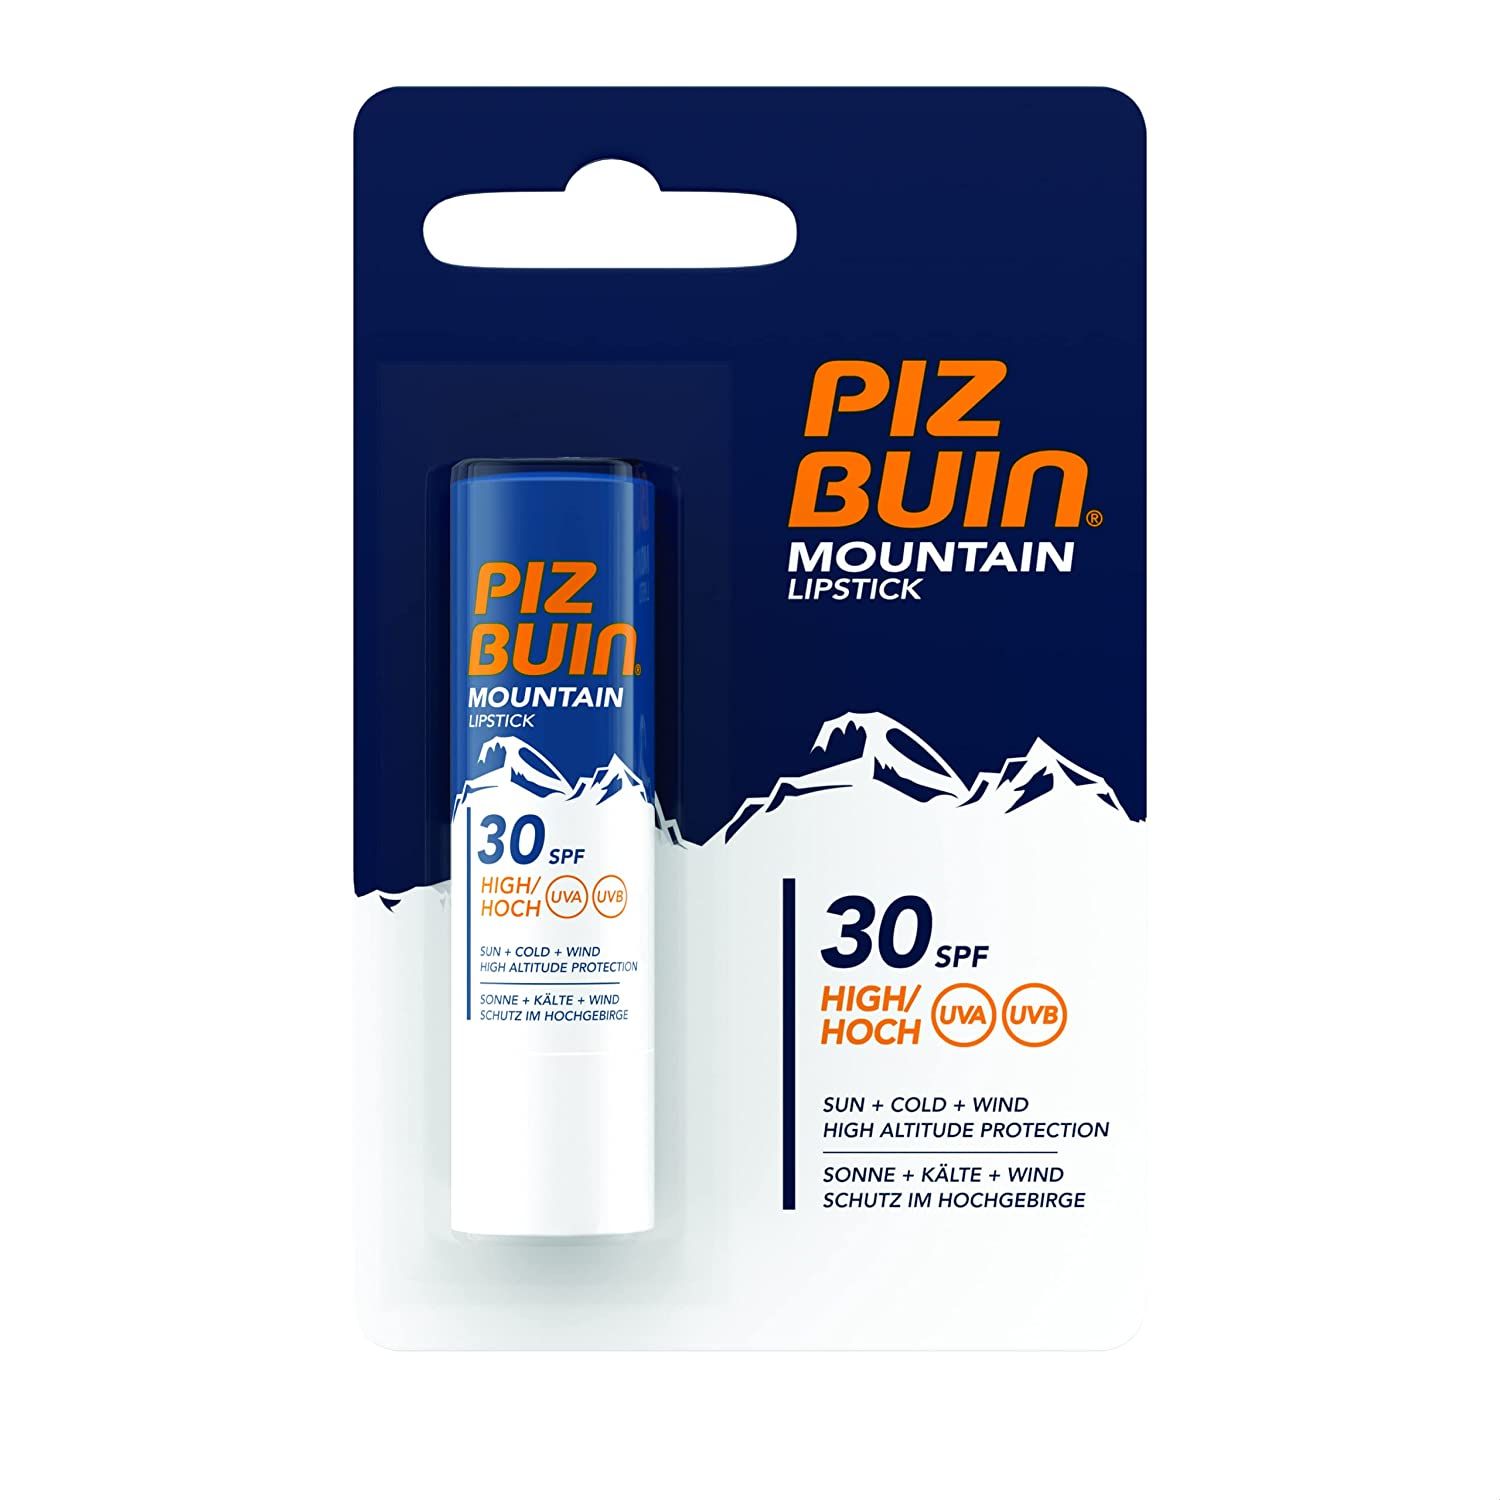 Piz Buin Mountain Lipstick, Lippenpflegestift für Wintersportler, Sonnenschutz für die Lippen LSF 30